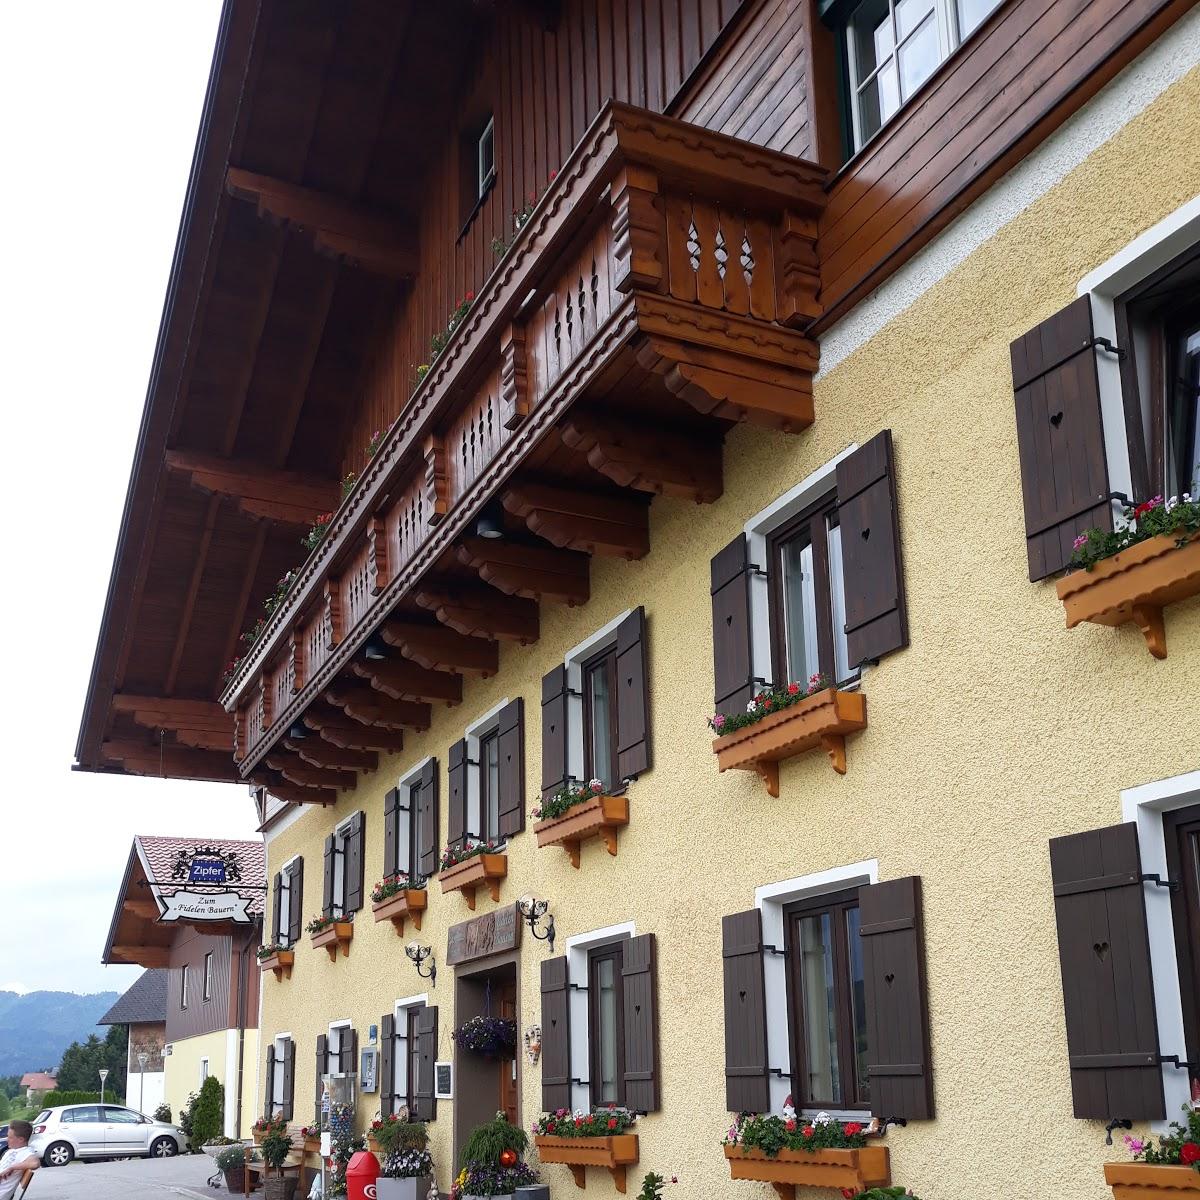 Restaurant "Gasthaus zum fidelen Bauern" in Oberwang